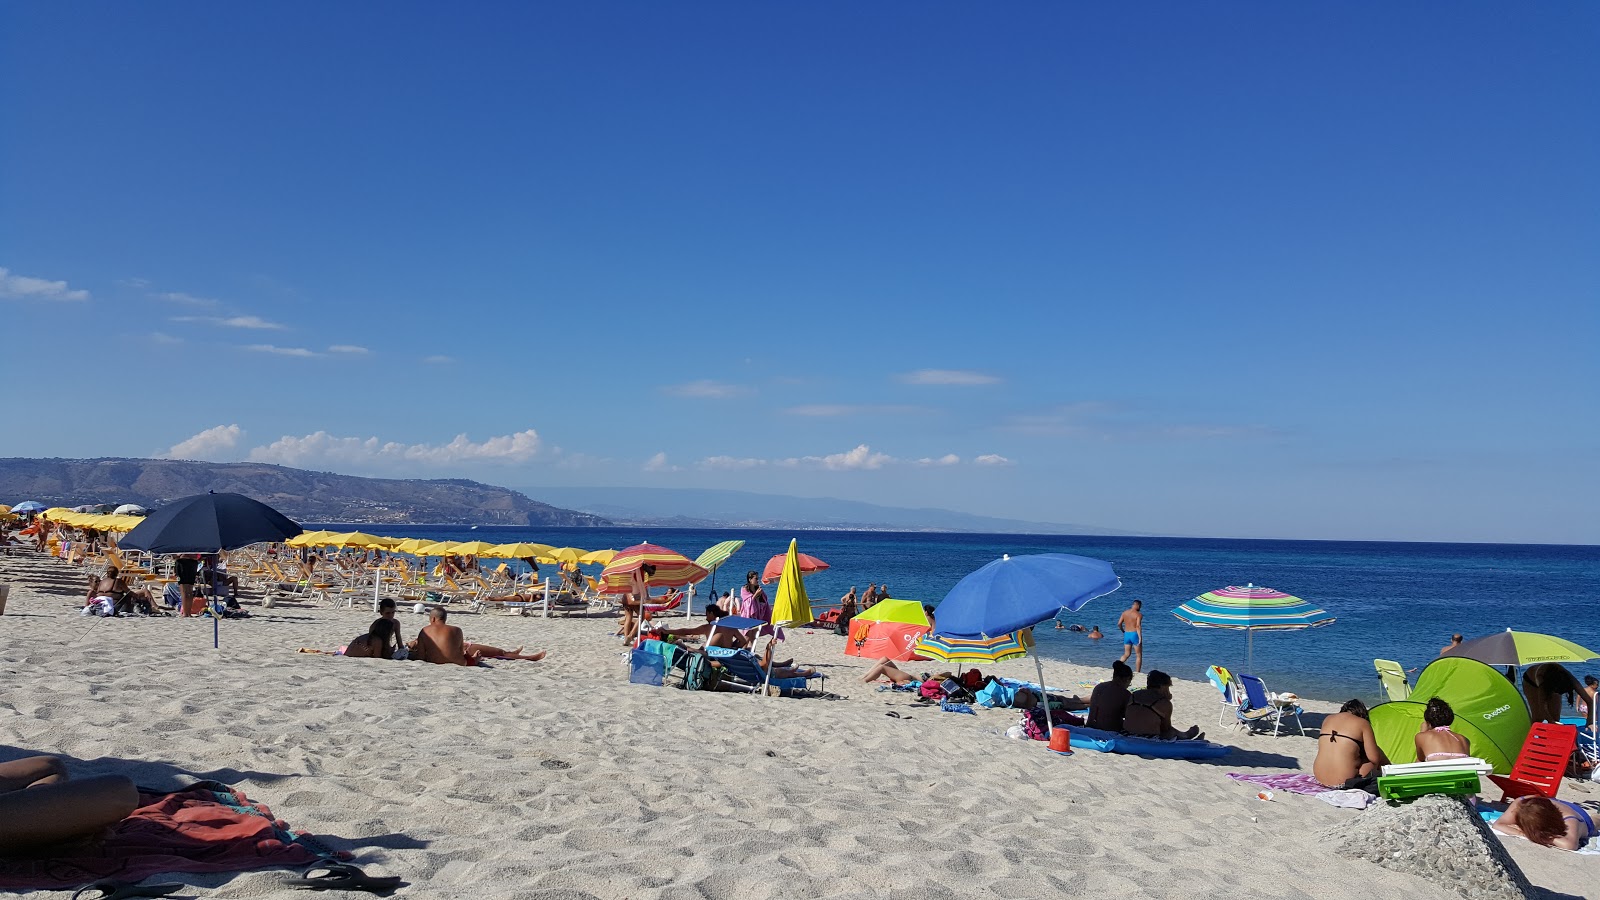 Spiaggia Soverato的照片 海滩度假区